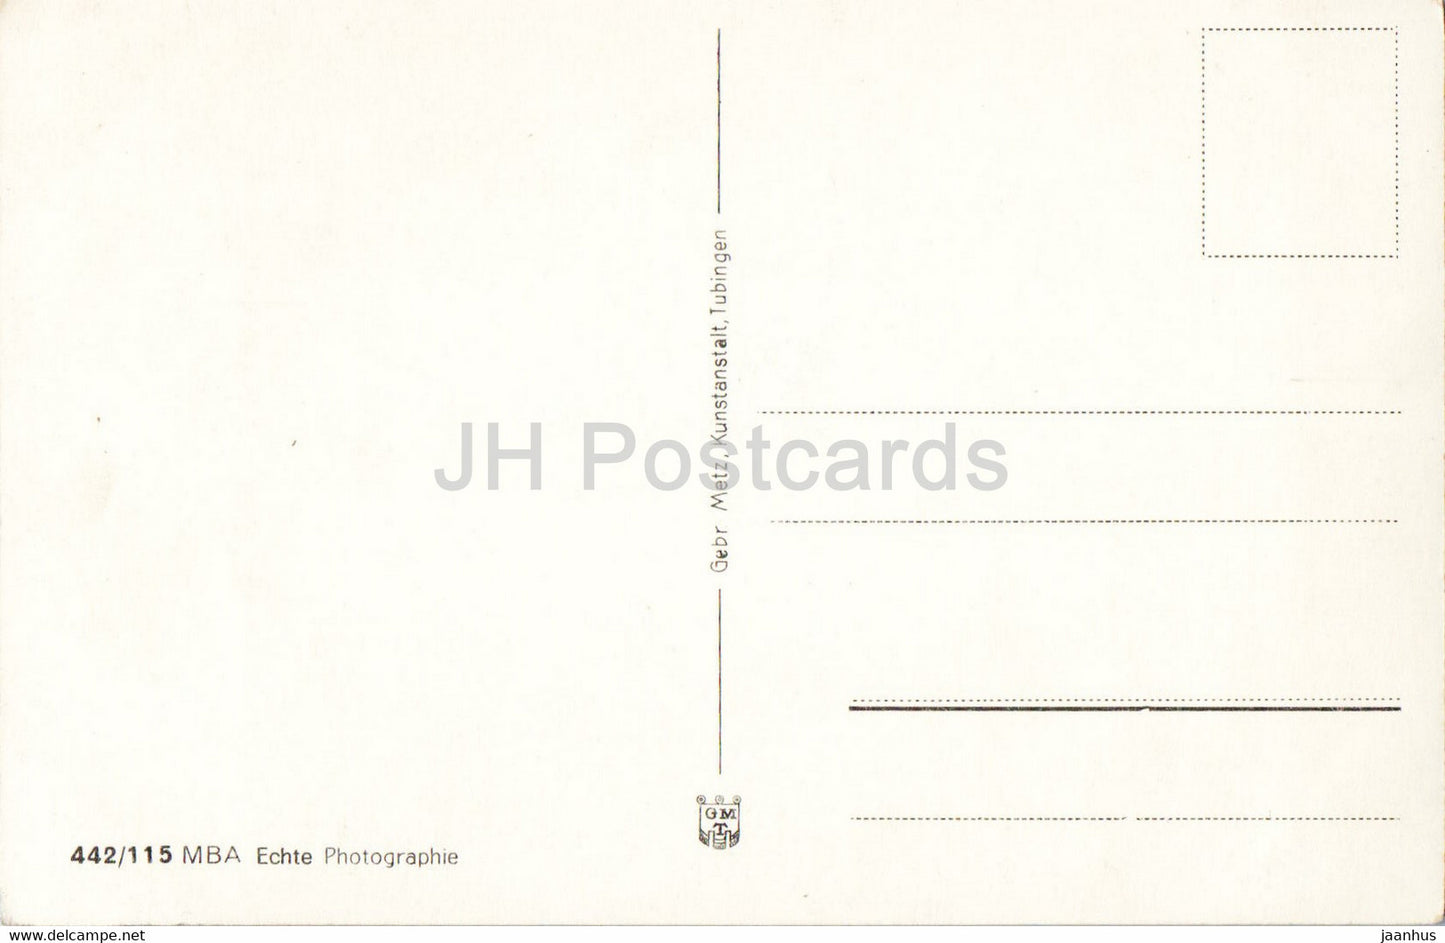 Burg Hohenzollern 855 m - alte Postkarte - Deutschland - unbenutzt